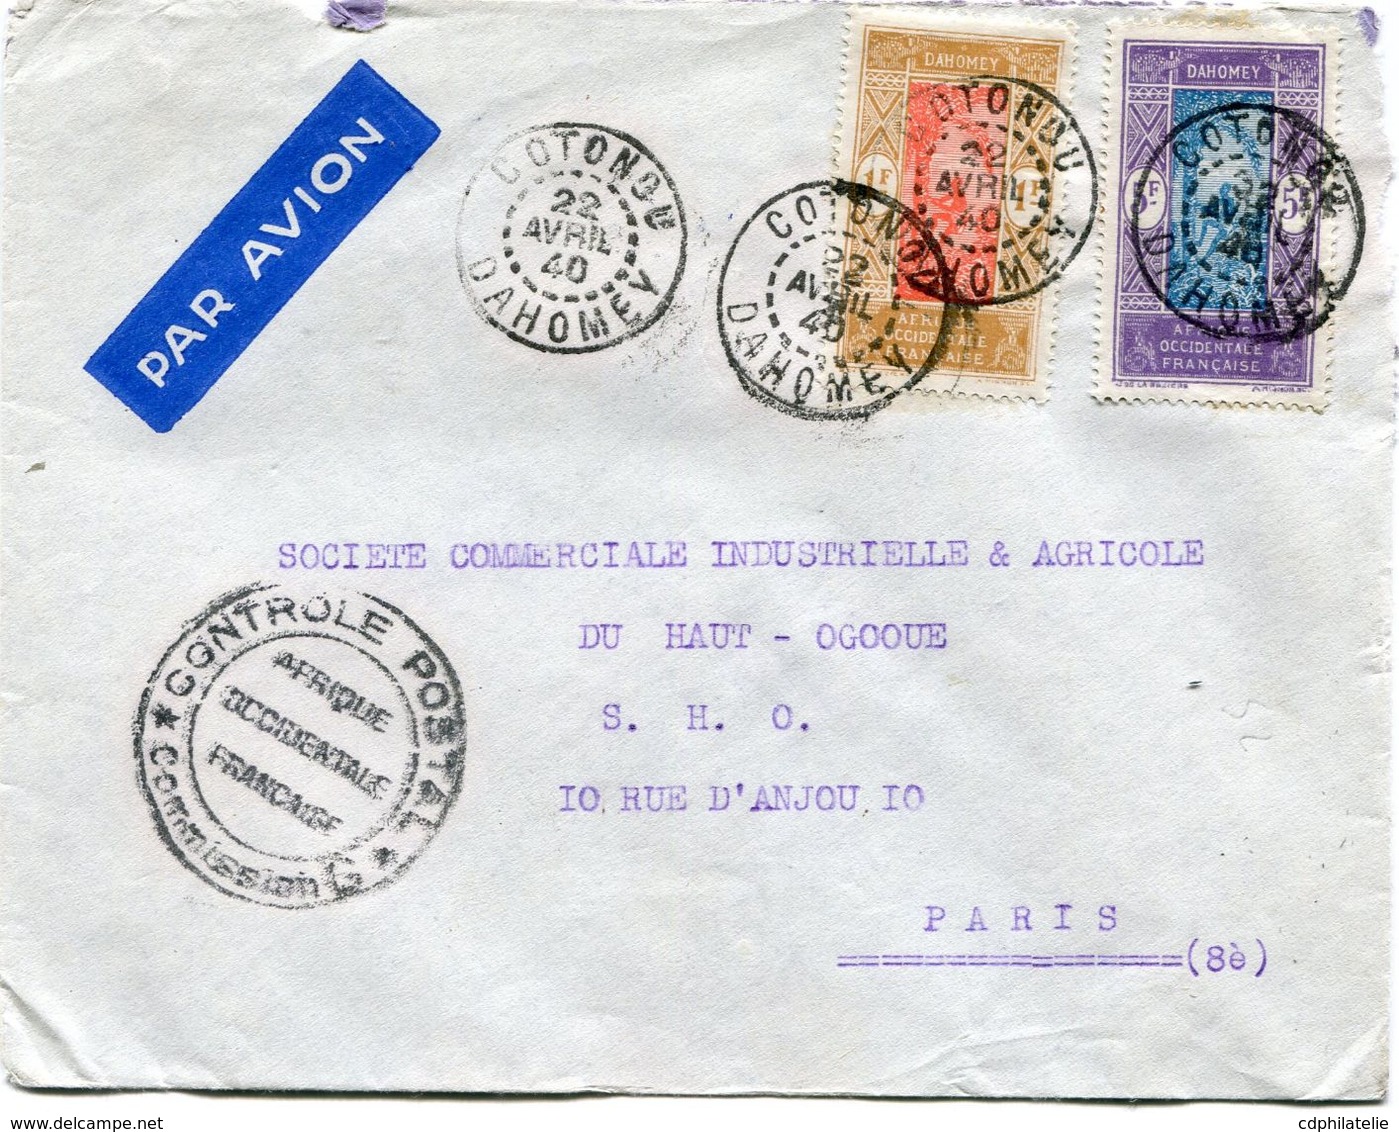 DAHOMEY LETTRE PAR AVION CENSUREE DEPART COTONOU 22 AVRIL 40 DAHOMEY POUR LA FRANCE - Lettres & Documents